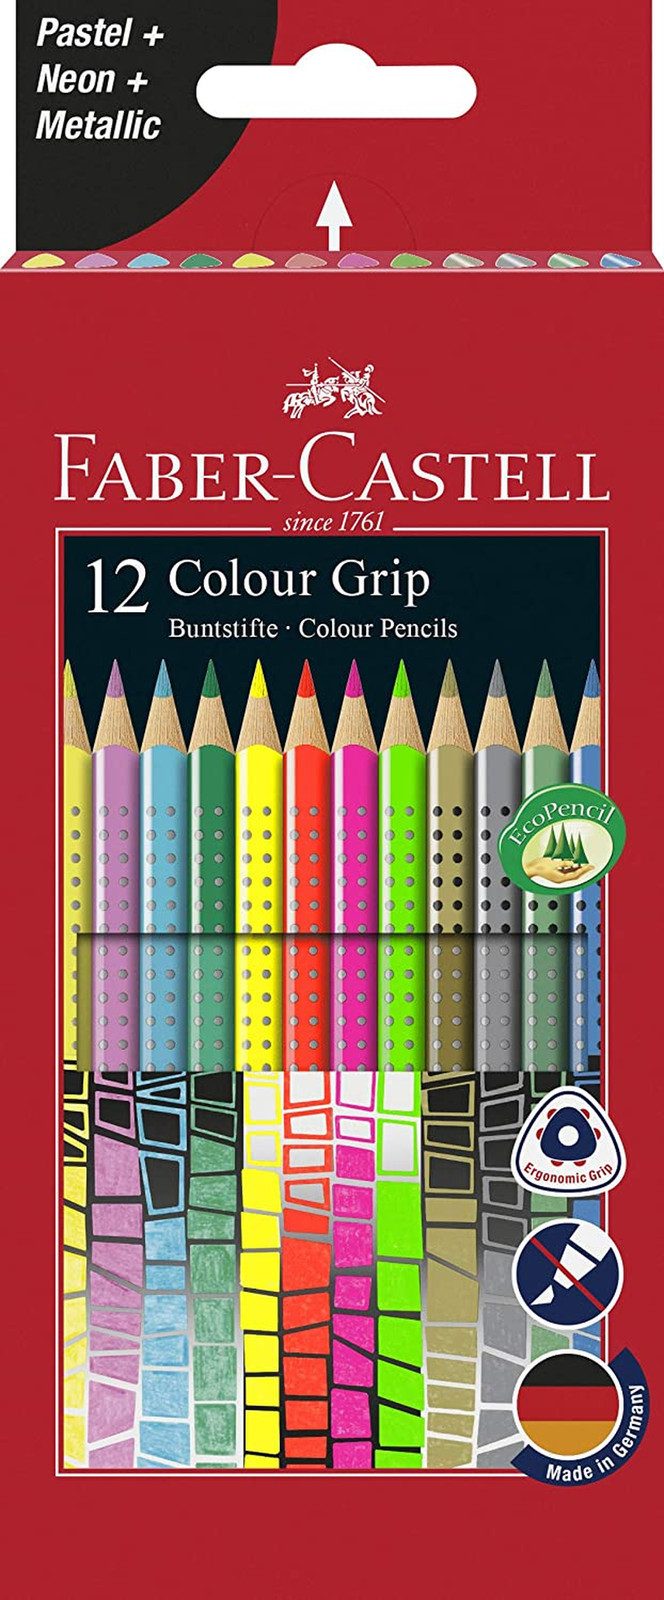 Faber-Castell Buntstift Colour Grip, 12er Kartonetui mit Sonderfarben, Pastel, Neon, Metallic